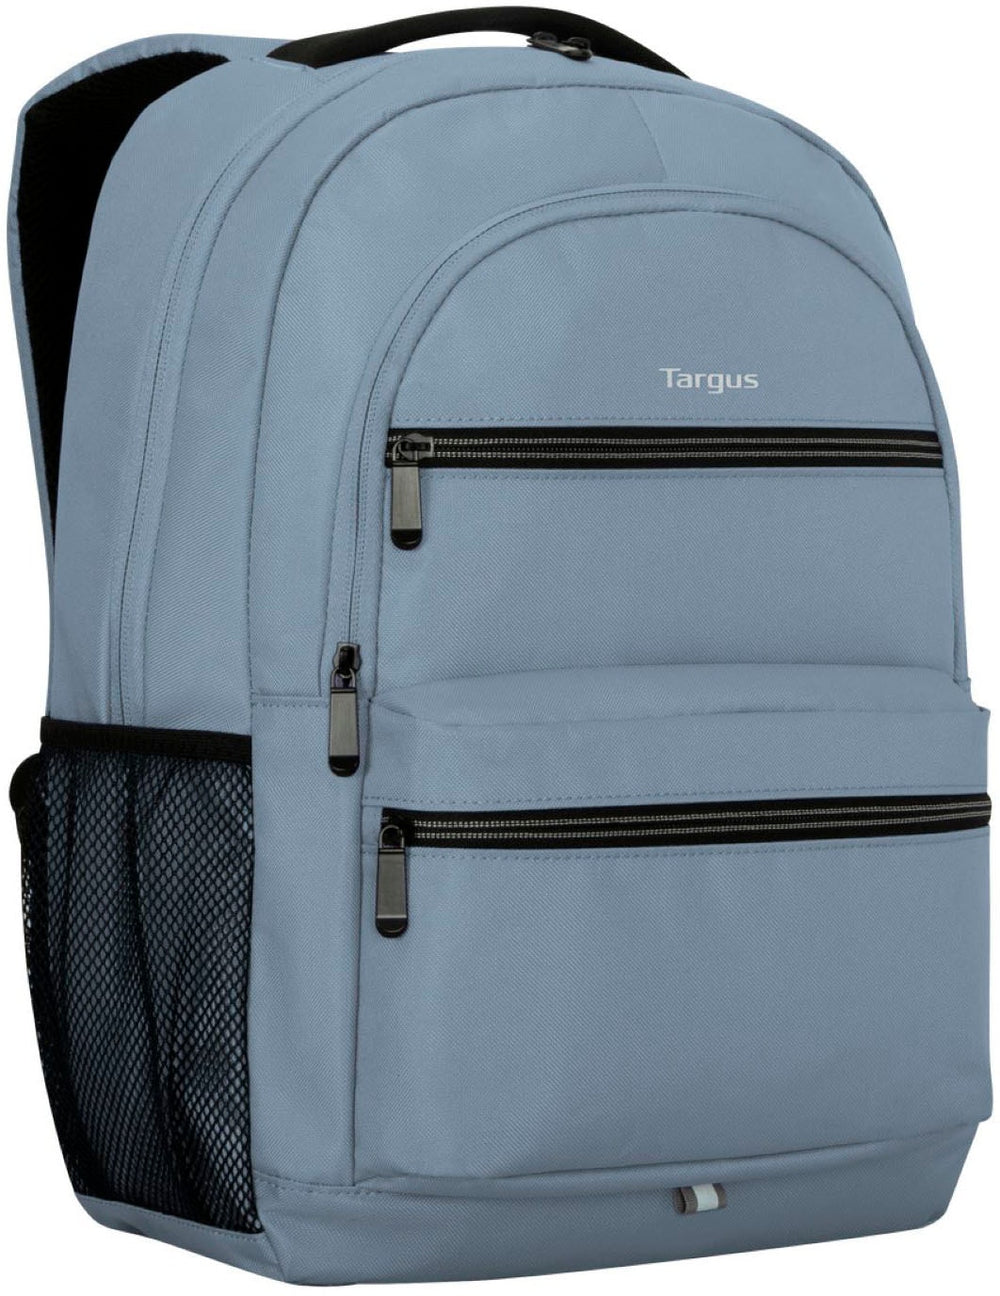 Targus - Octave II Backpack for 15.6” Laptops - Blue_1